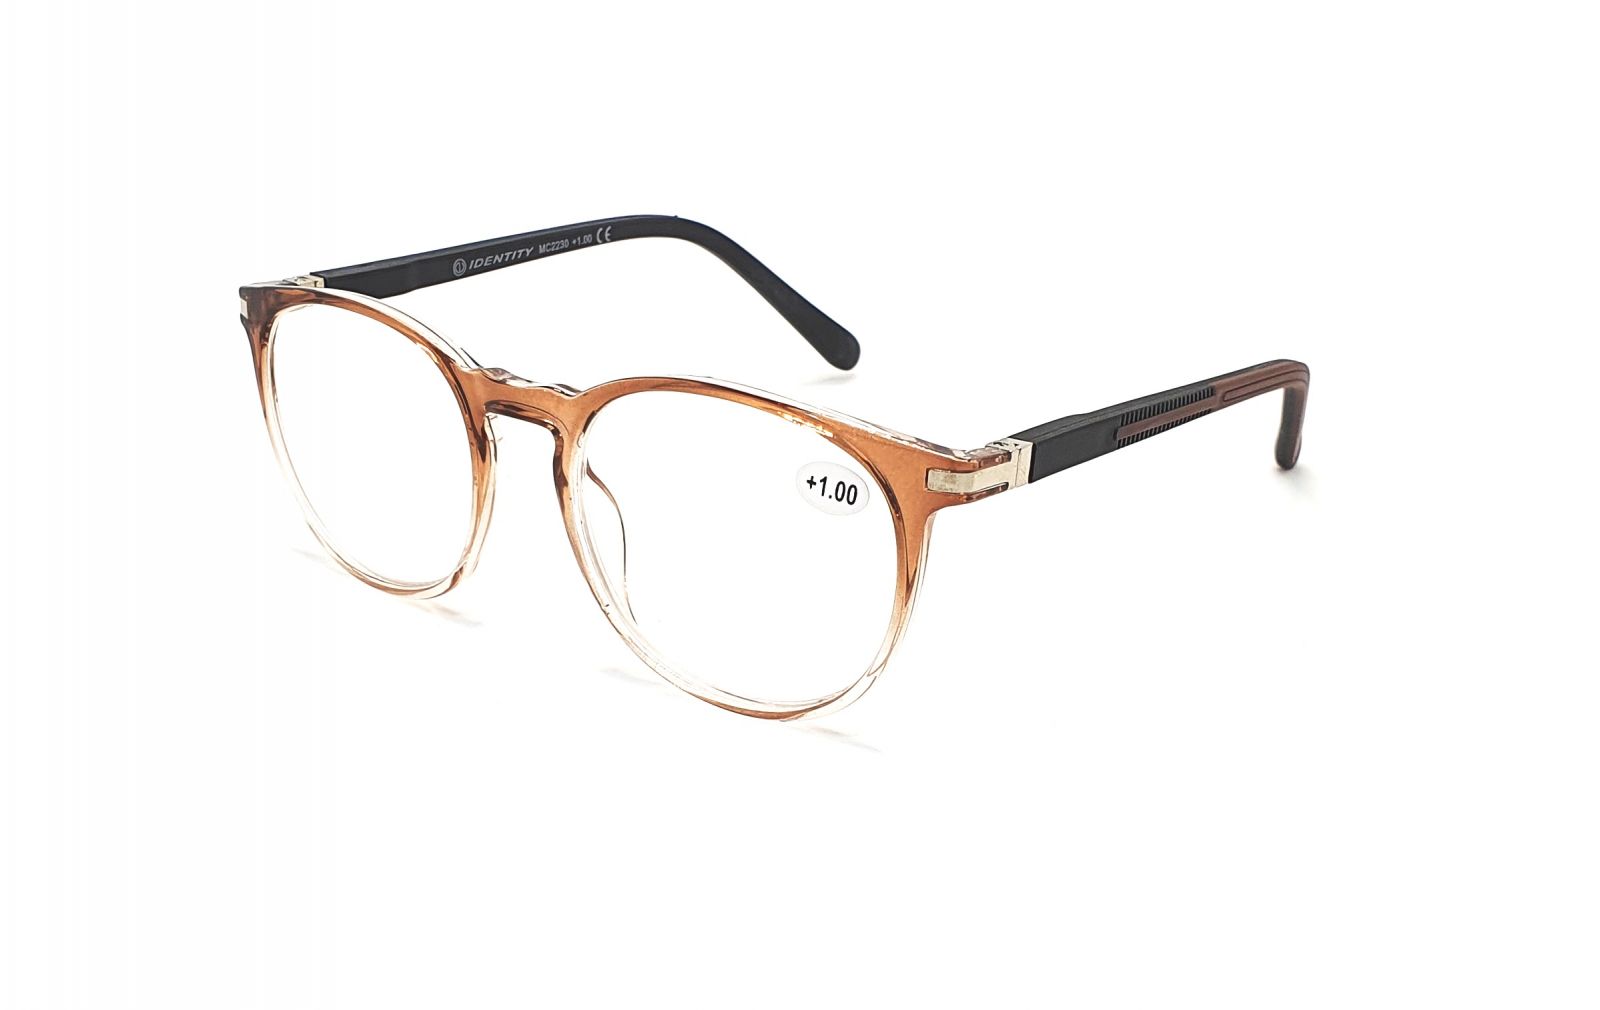 IDENTITY Dioptrické brýle MC2230 +4,00 brown/black flex